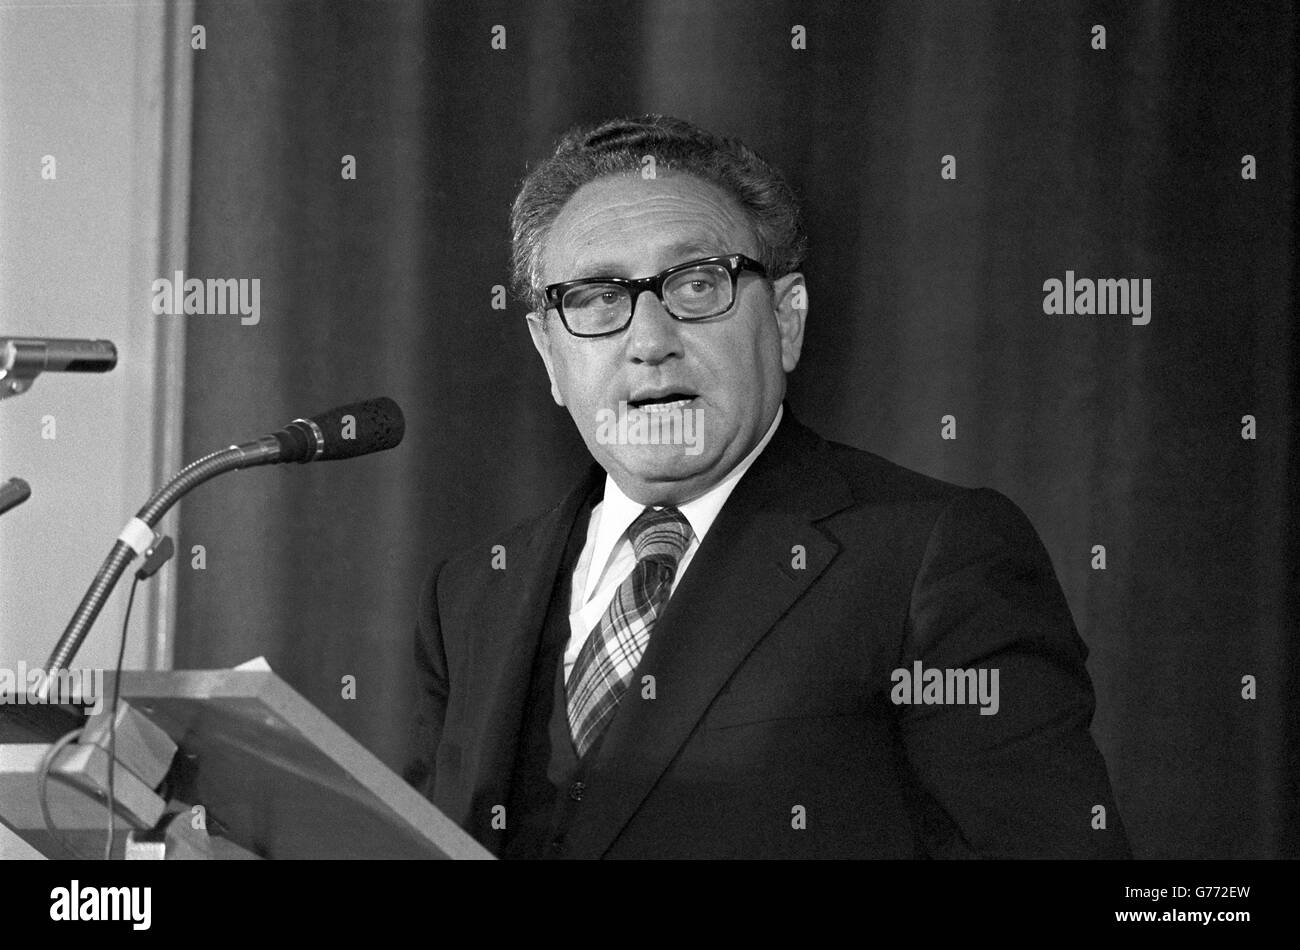 Politcs - Dr Henry Kissinger Discours - Londres. Le Dr Henry Kissinger prononce un discours. Banque D'Images